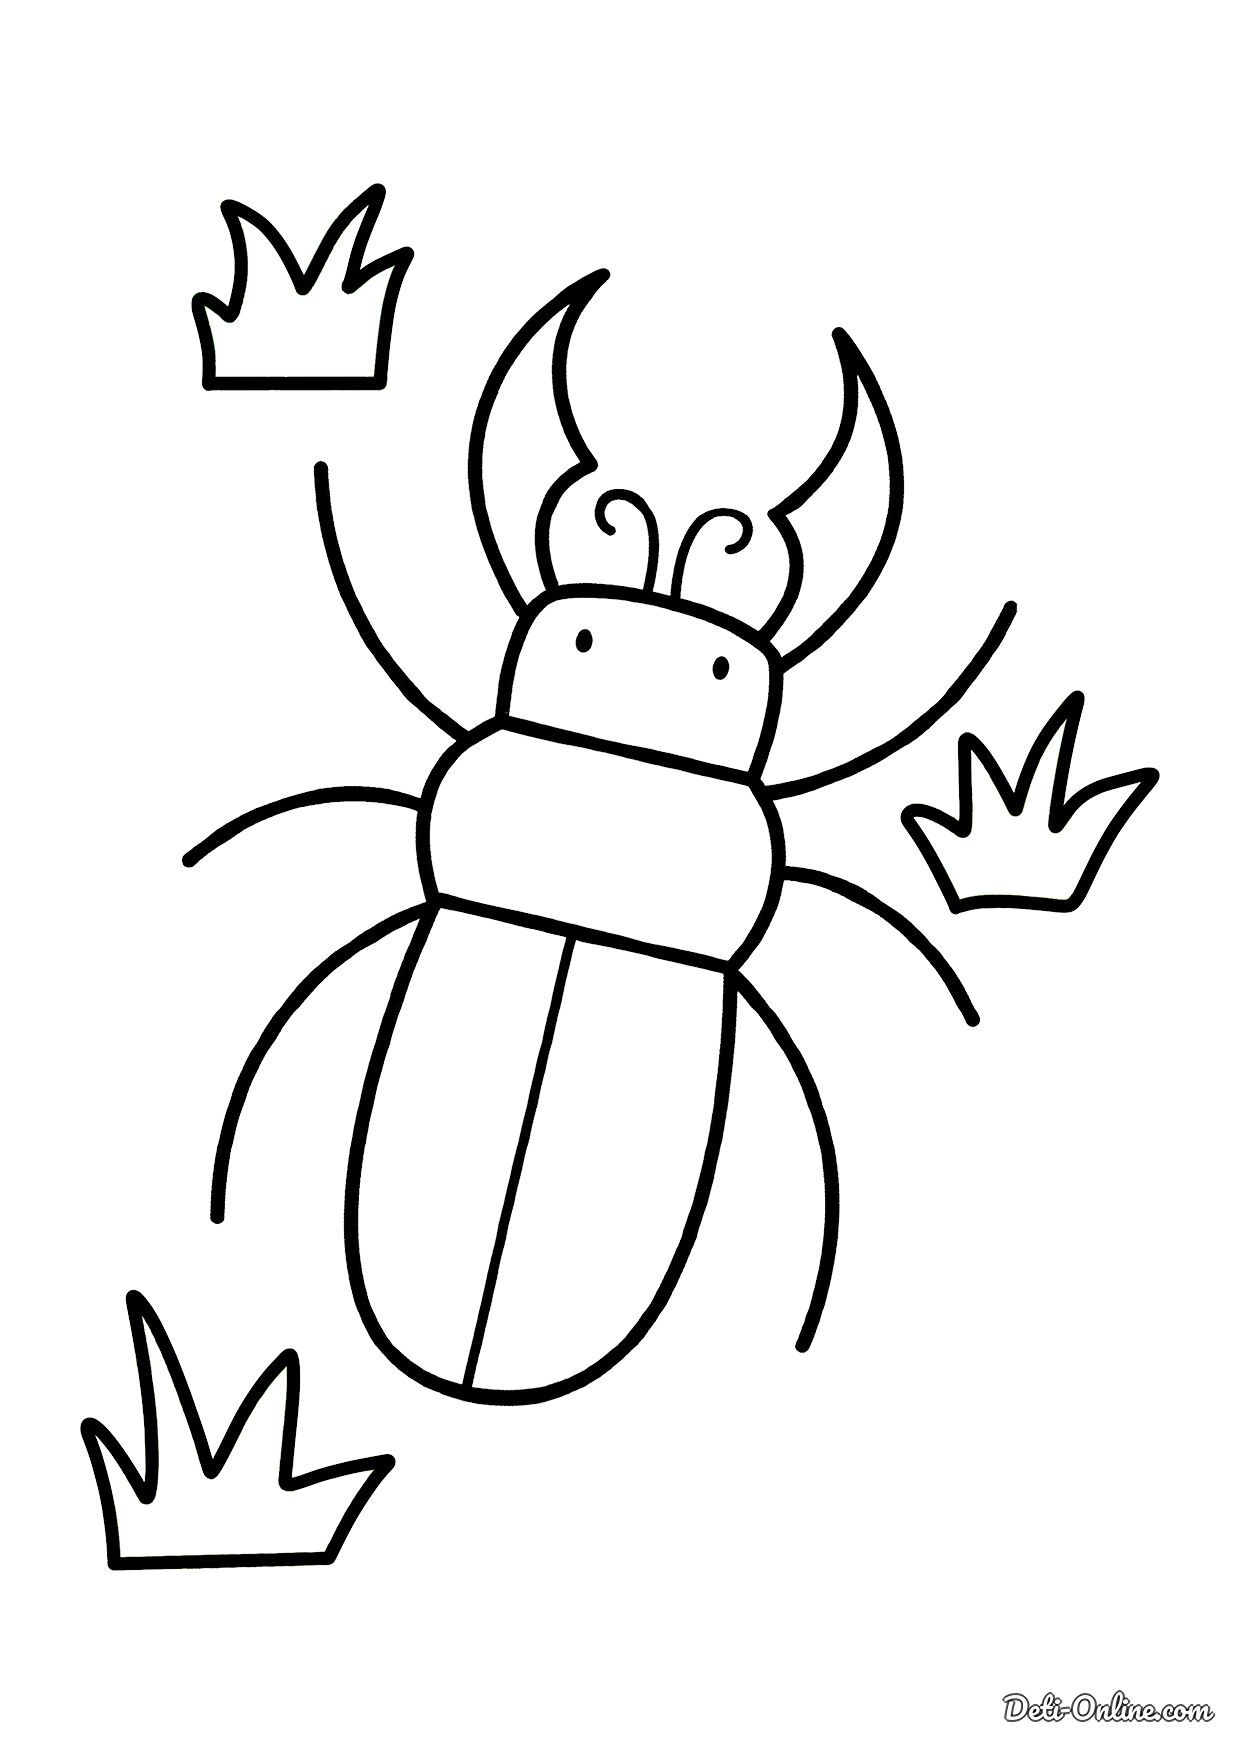 Креативная раскраска жуки для детей 3-4 лет